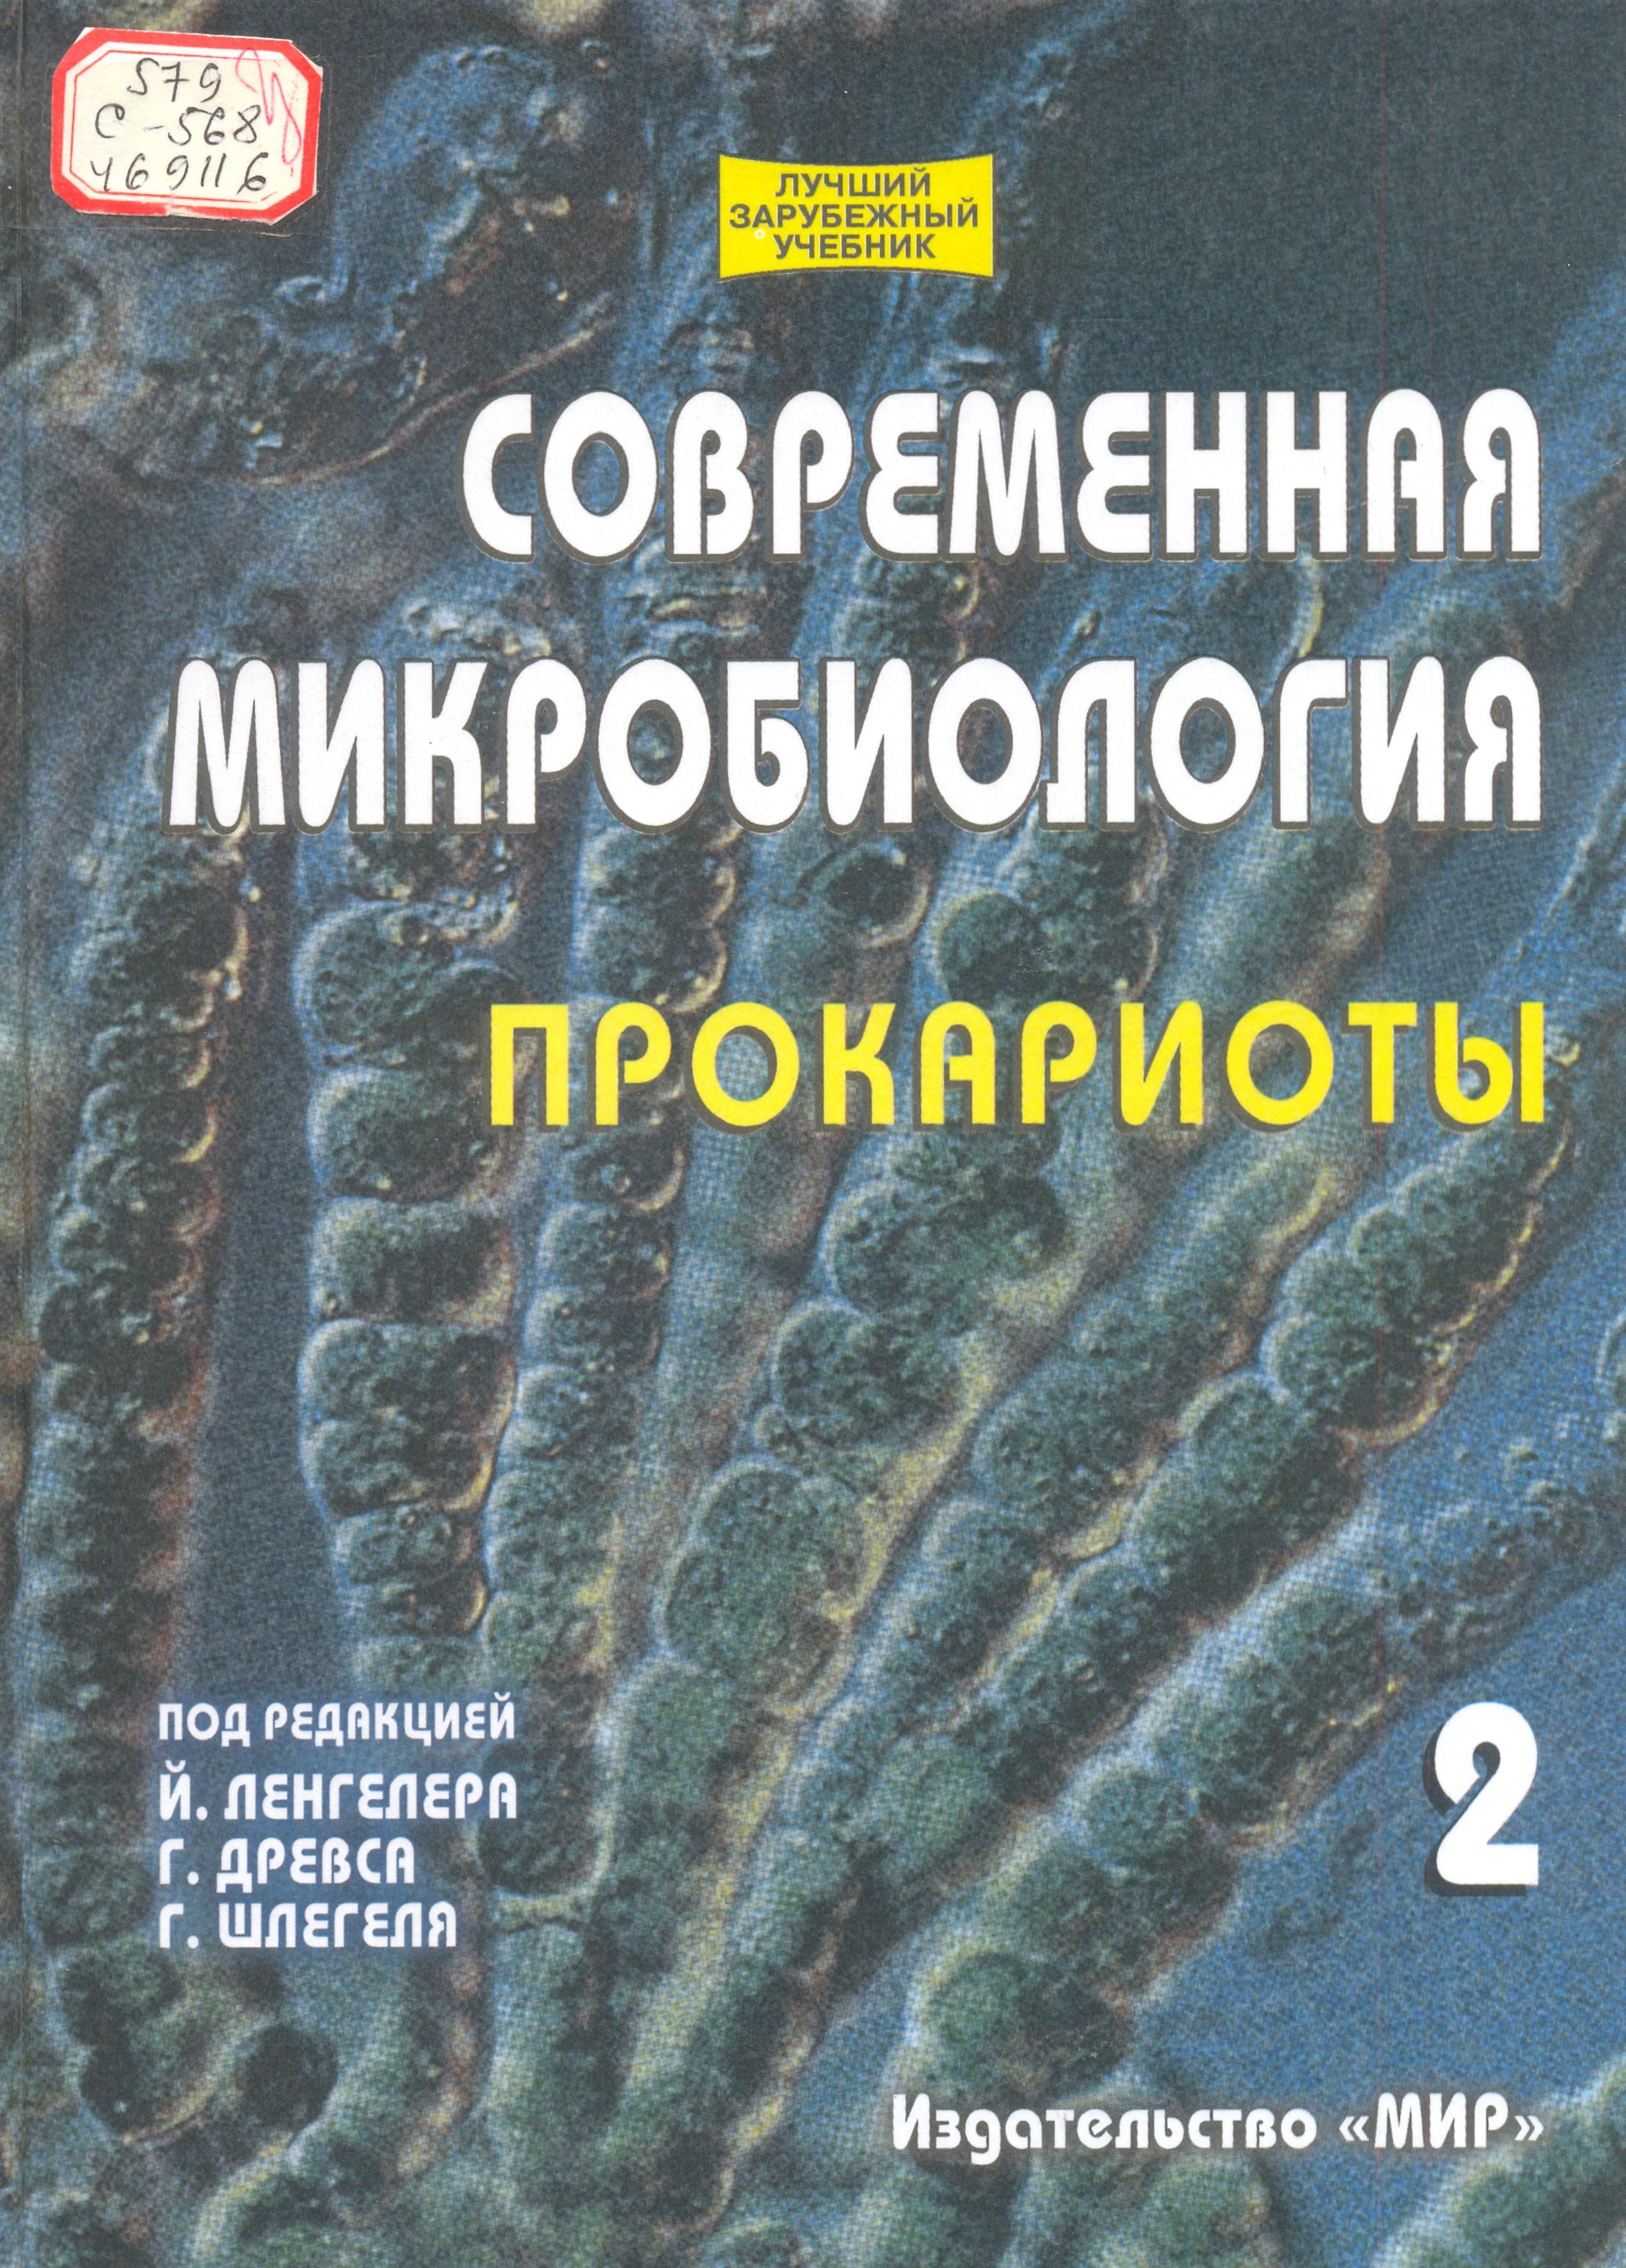 Современная микробиология прокариоты (2-том)